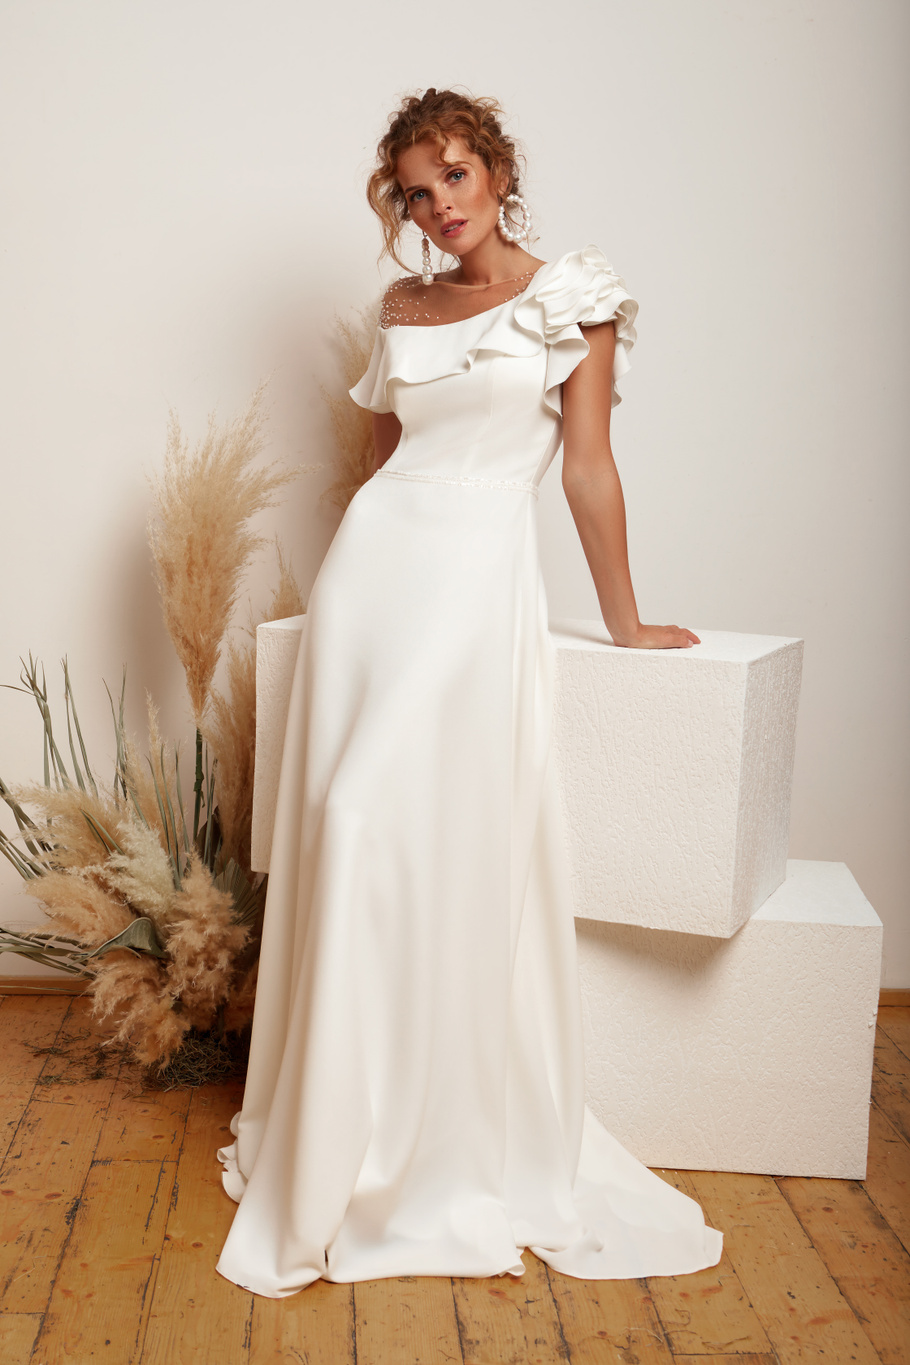 Купить свадебное платье «Астра» Мэрри Марк из коллекции 2020 года в Екатеринбурге